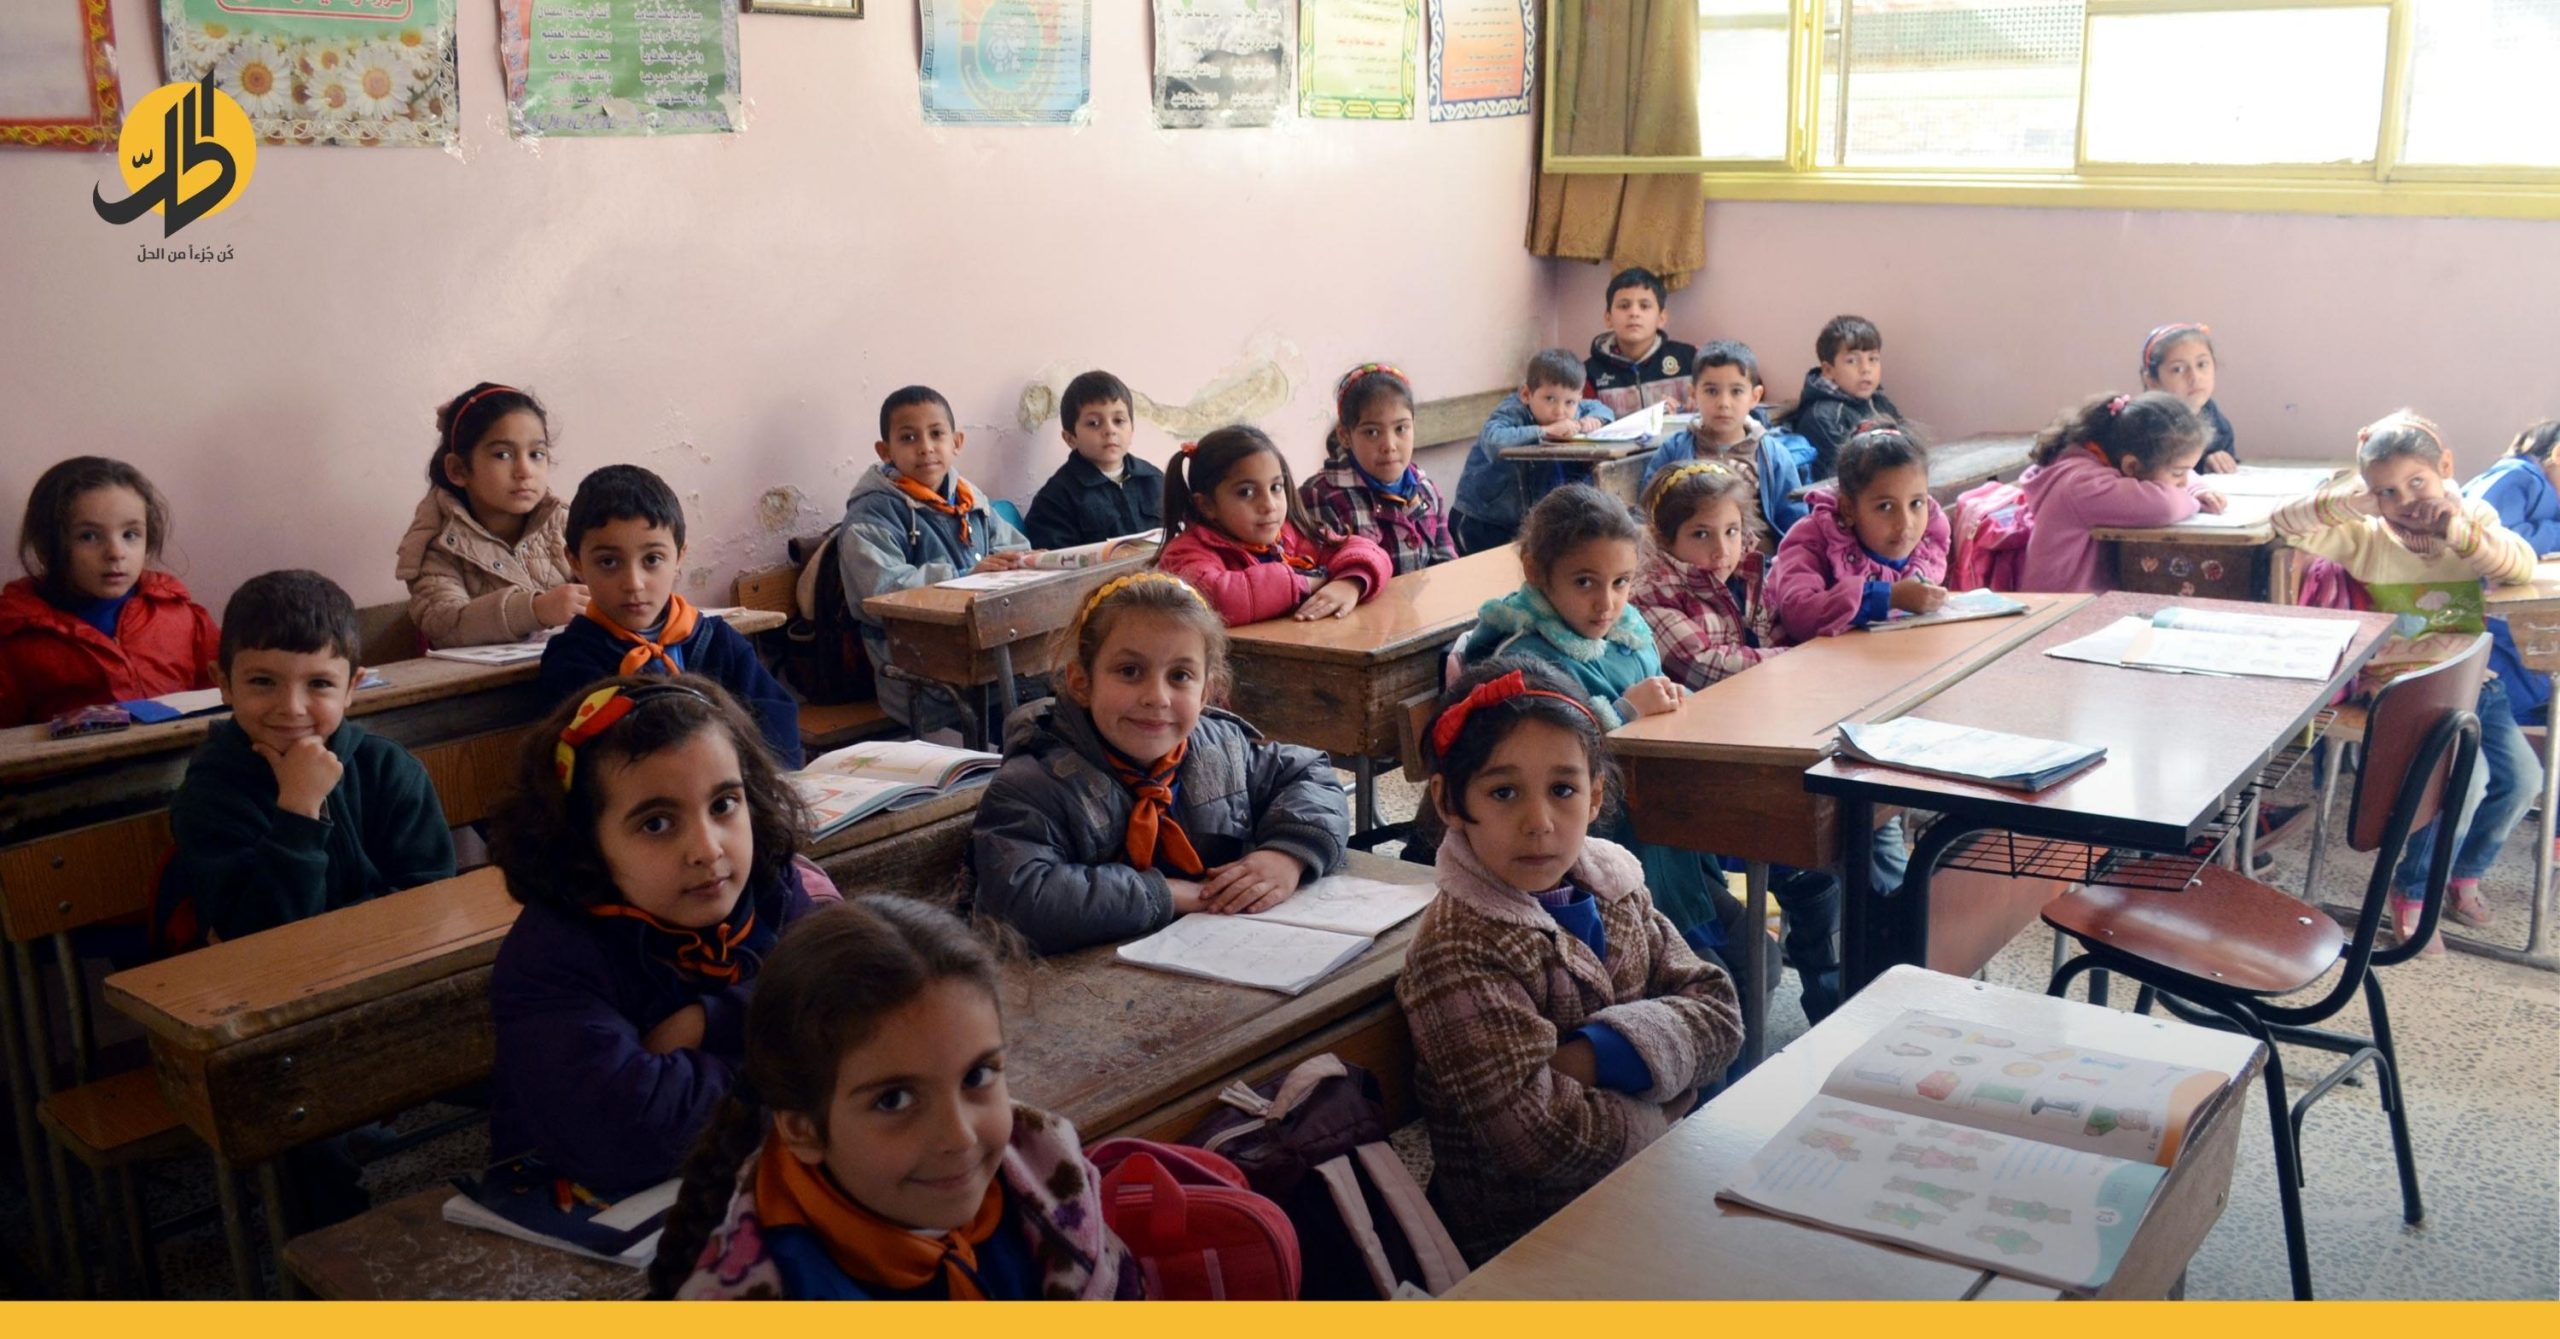 توقعات بفرض رسوم دراسية “باهظة” في المدارس السورية